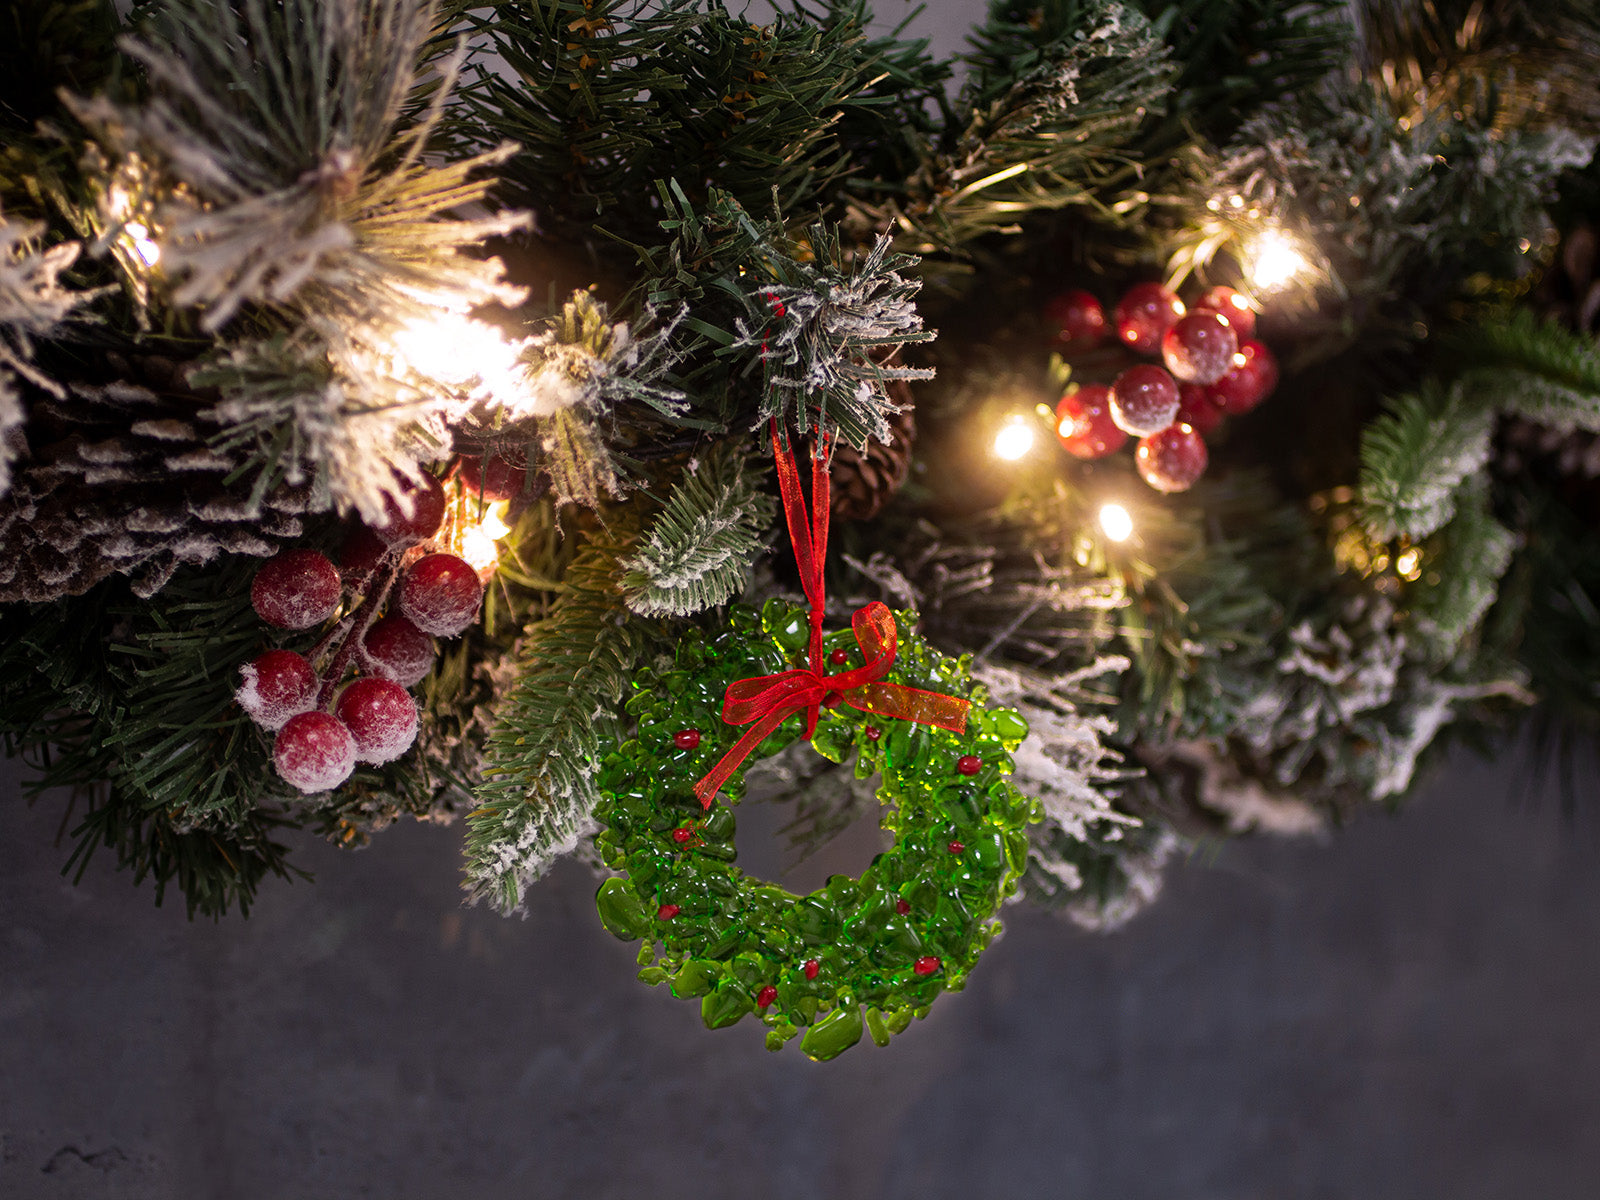 Christmas Hanging - Wreath